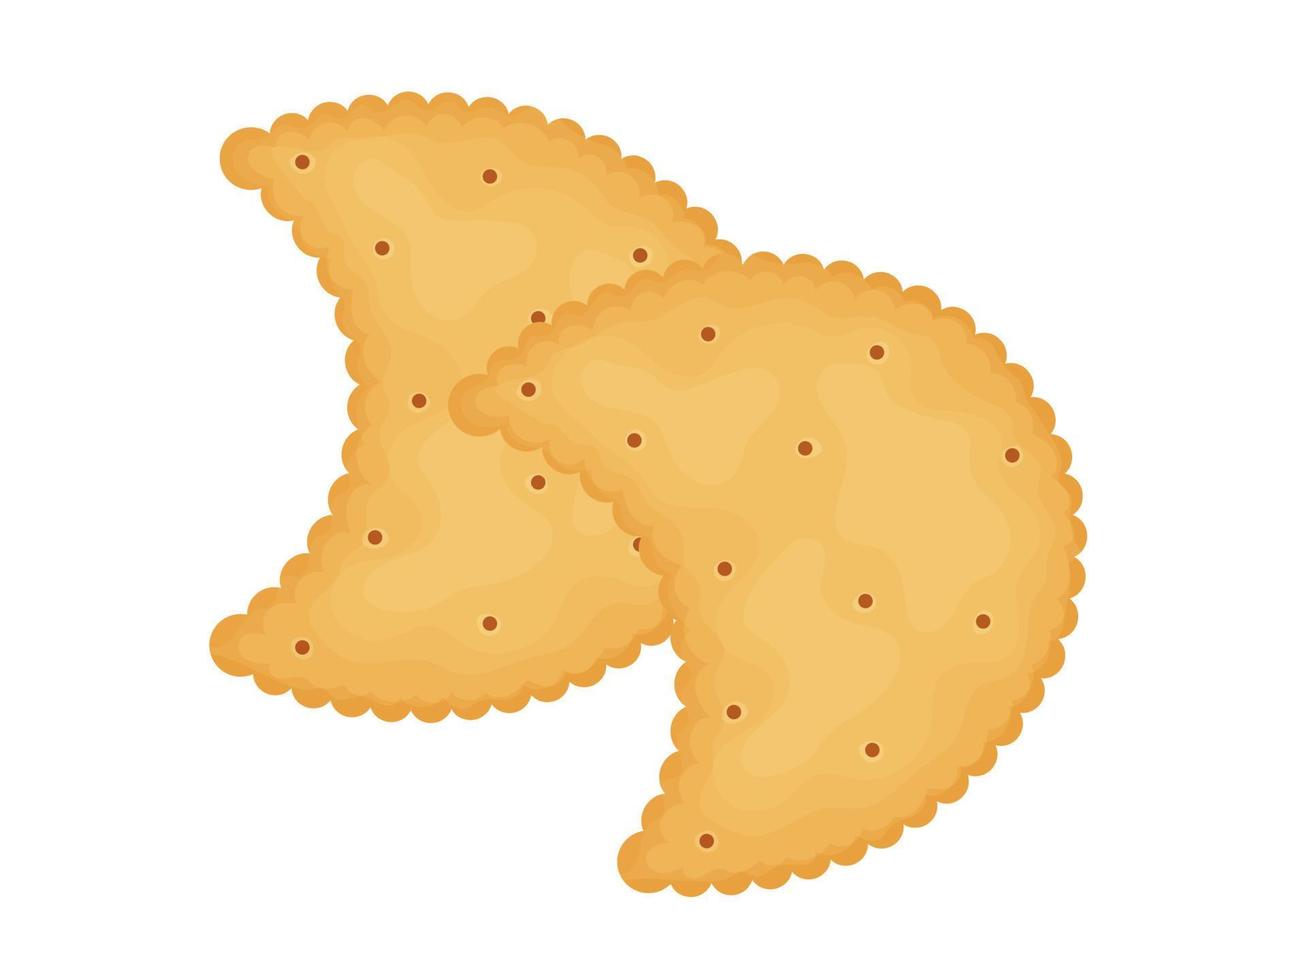 galletas en forma de luna. dos galletas ilustración de comida, bocadillos. refrigerio saludable. vector